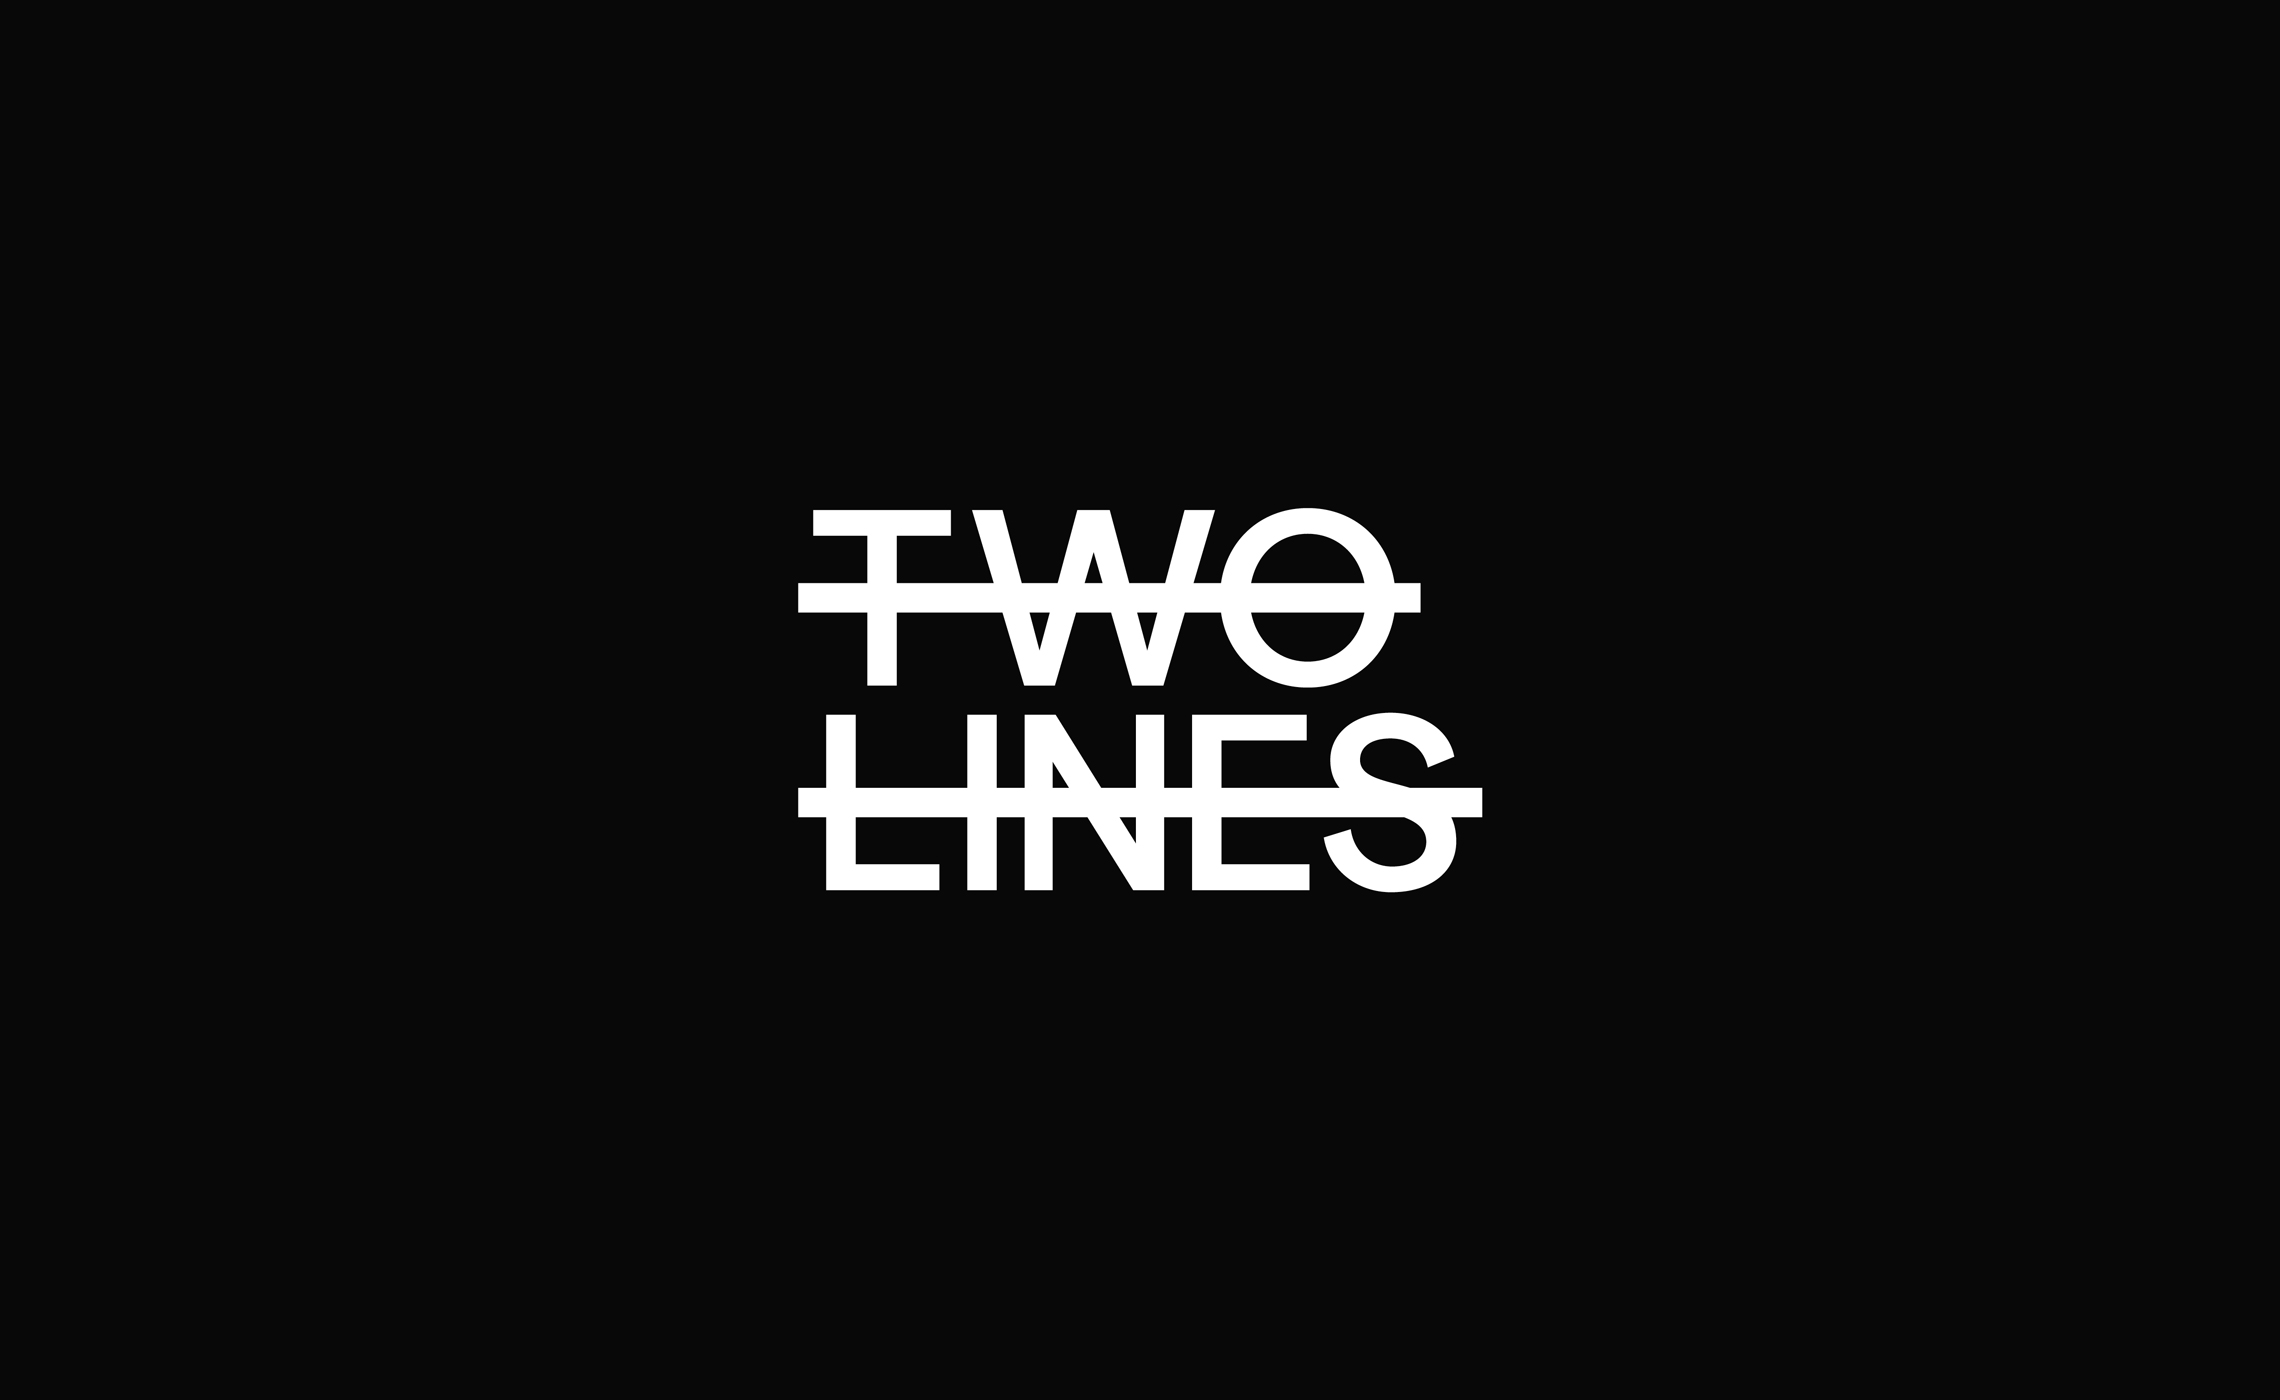 Logos Two Lines Studio